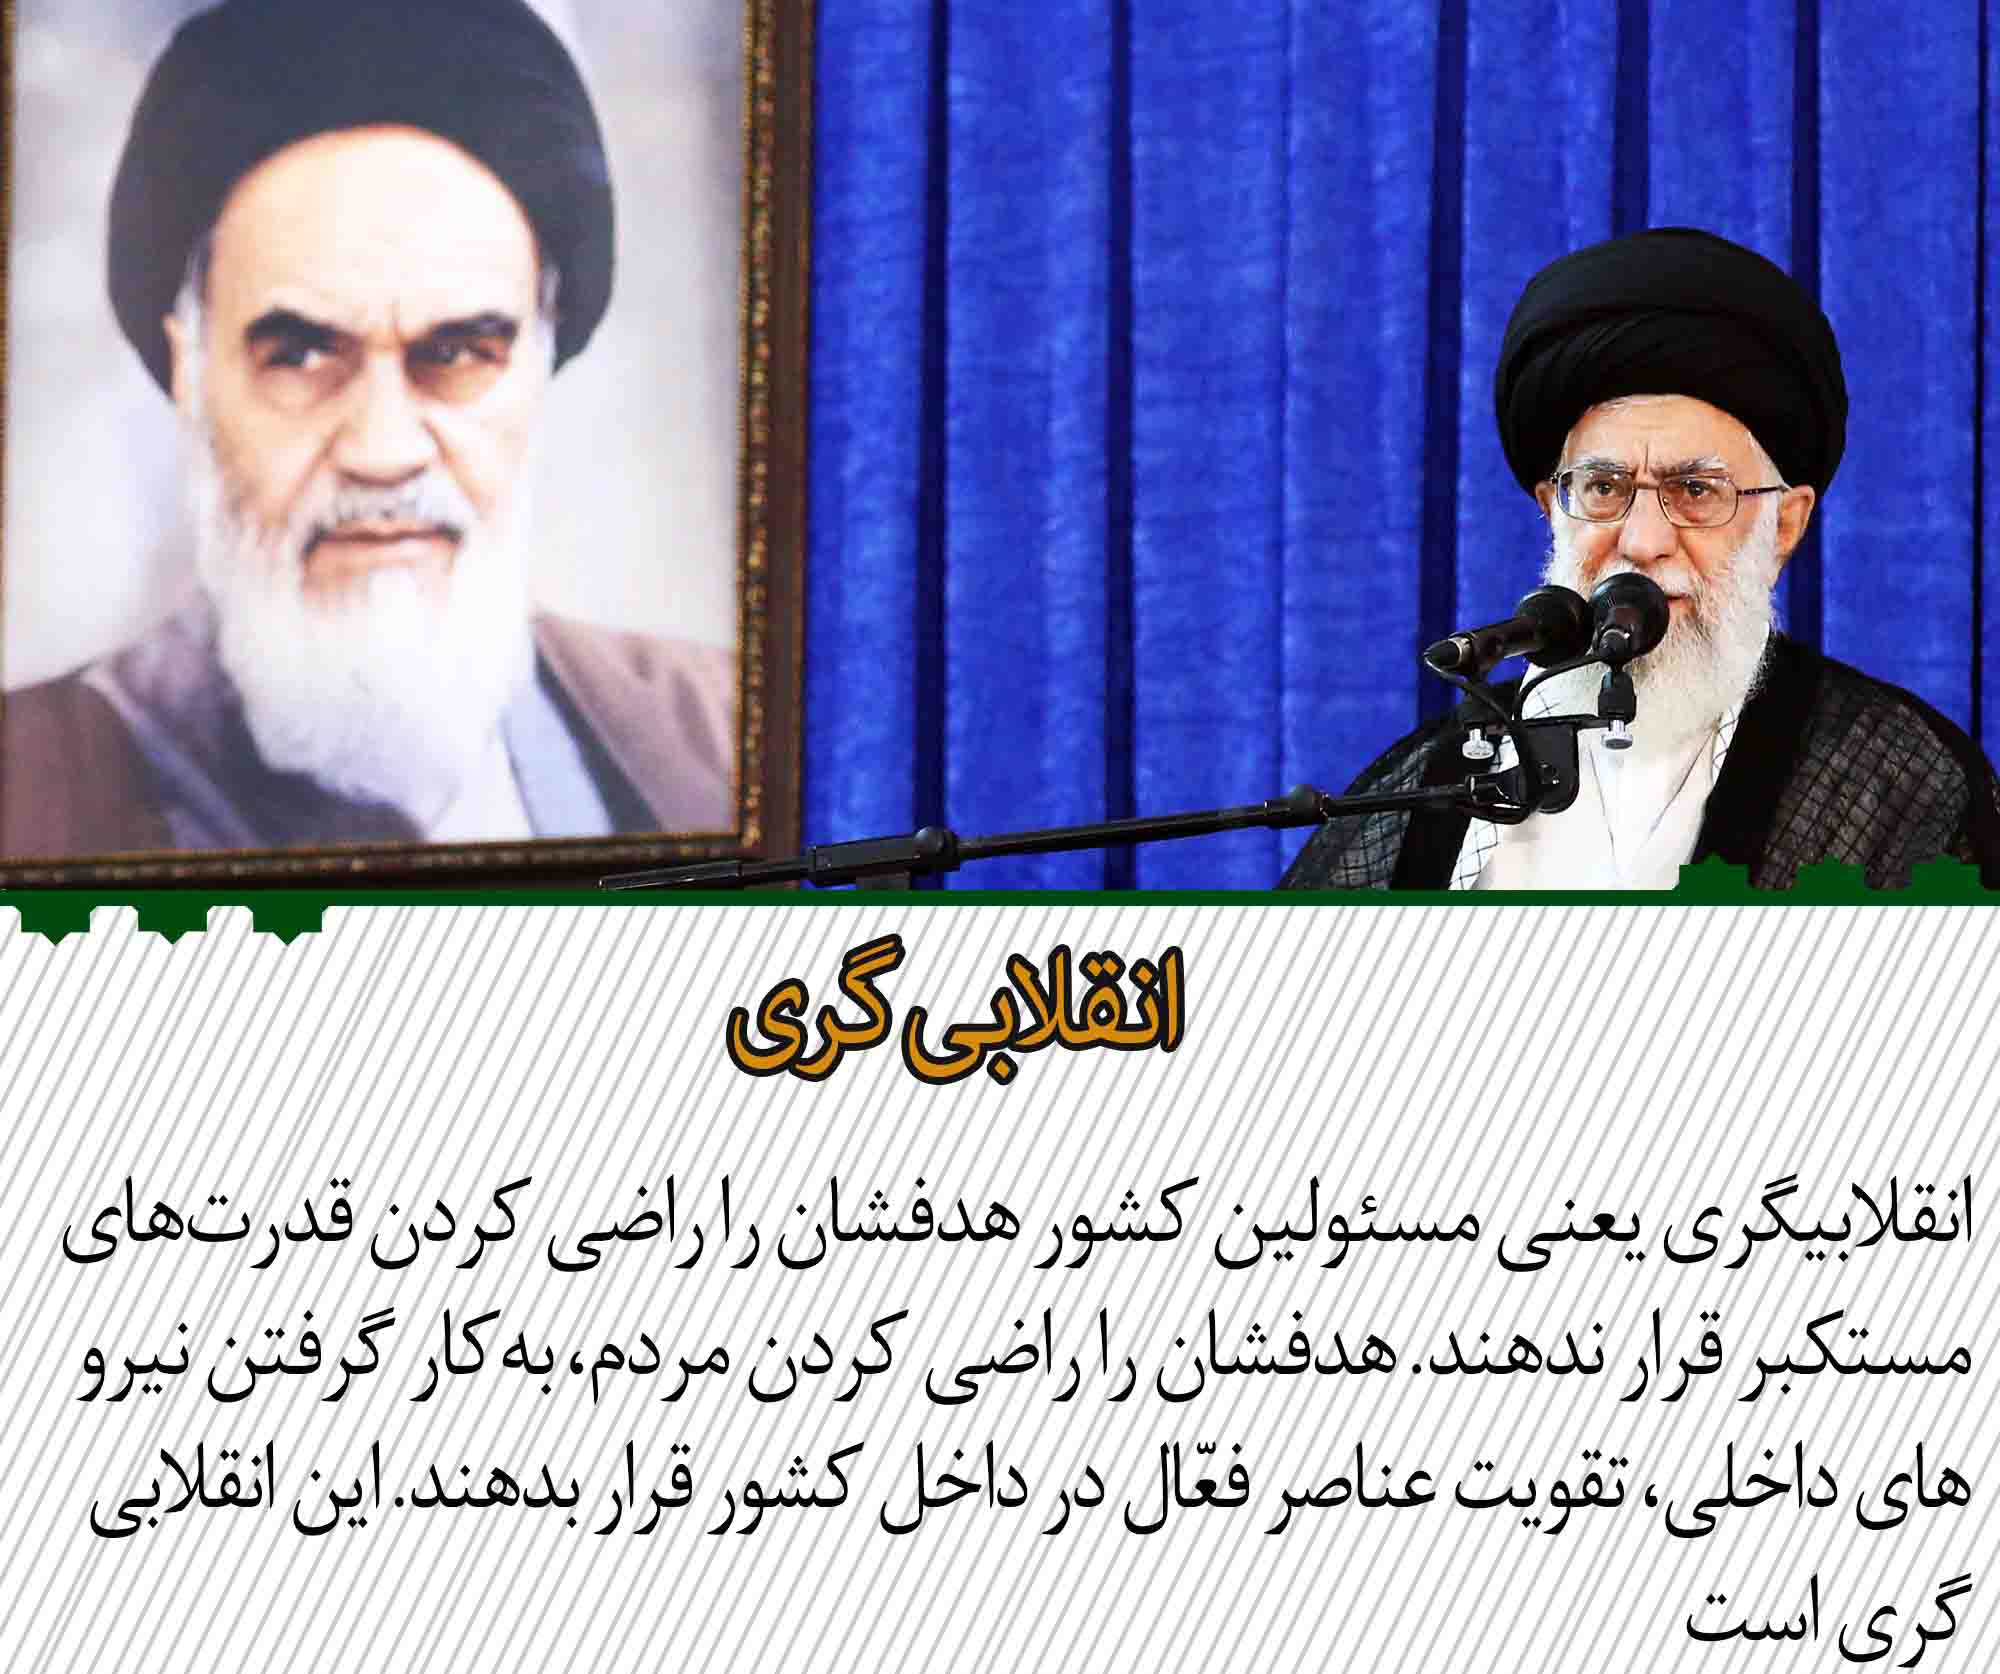 محورهای مهم بیانات رهبر انقلاب در مراسم سالگرد ارتحال امام(ره)